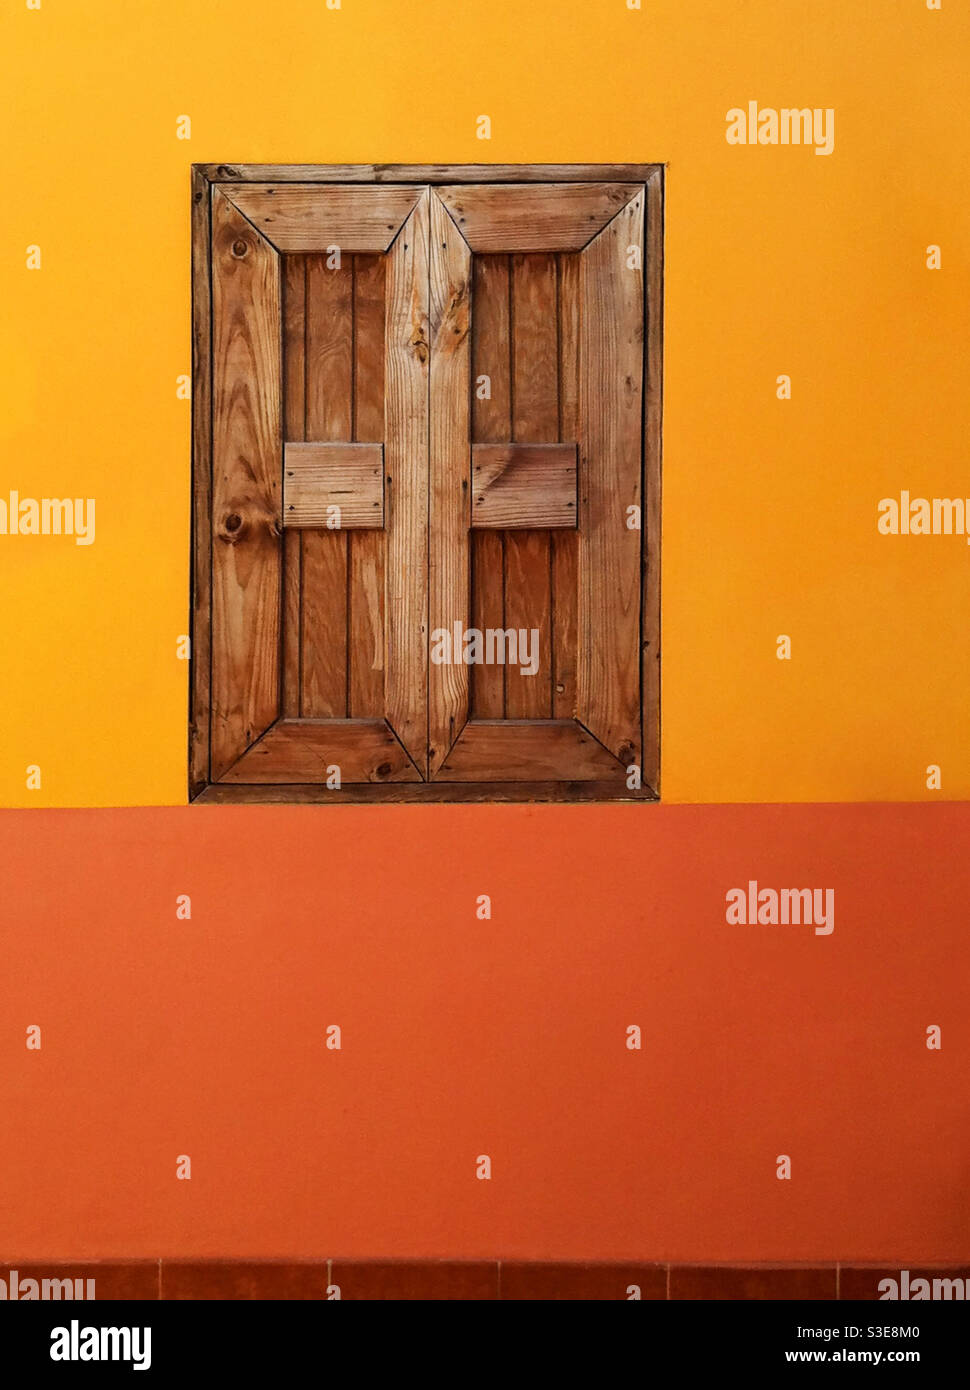 Des volets en bois massif couvrent une fenêtre dans un mur aux couleurs chaudes. Jamaïque. Banque D'Images